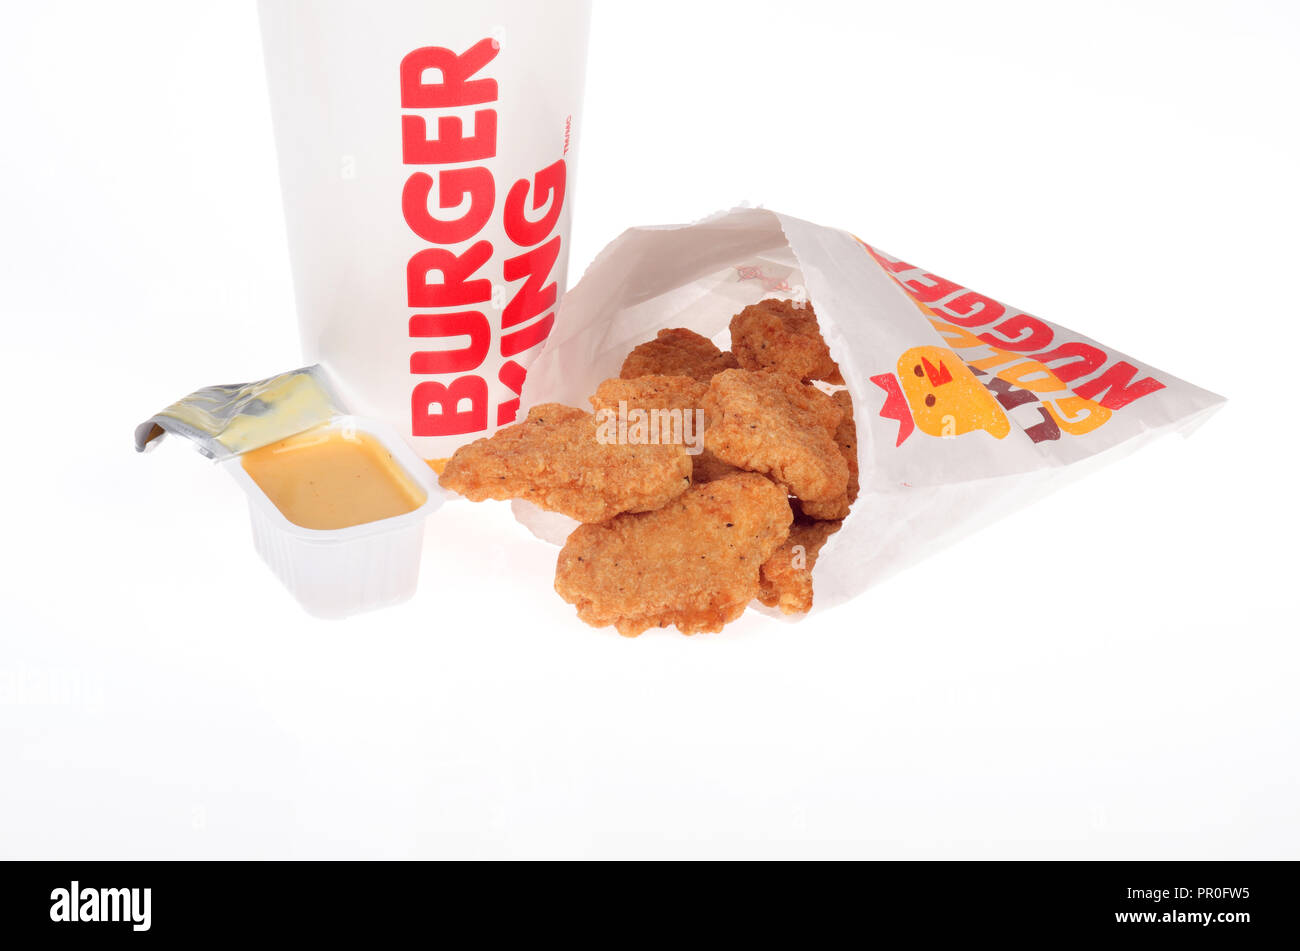 Burger King nuggets de pollo con salsa de mostaza y miel una bebida cup Foto de stock